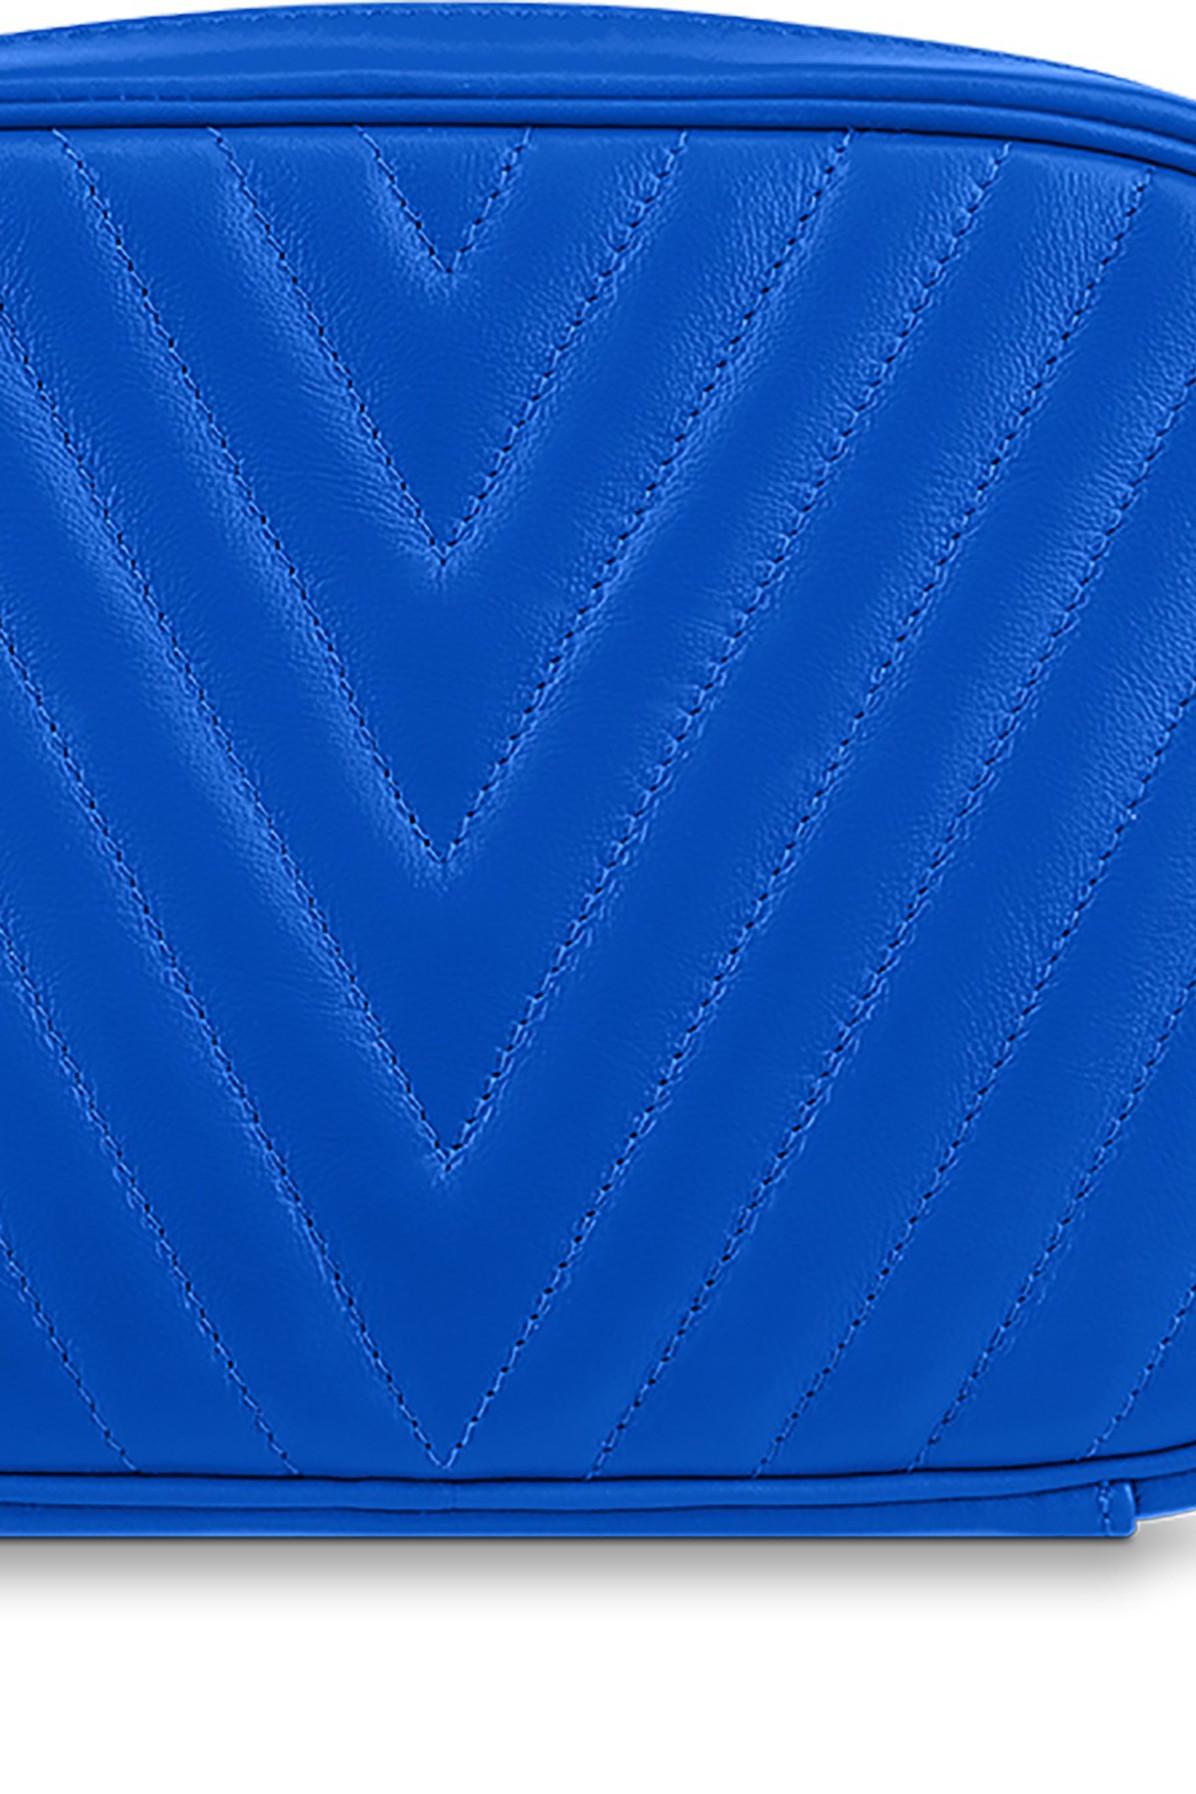 LOUIS VUITTON Calfskin New Wave Camera Bag Porcelain Blue 1290641